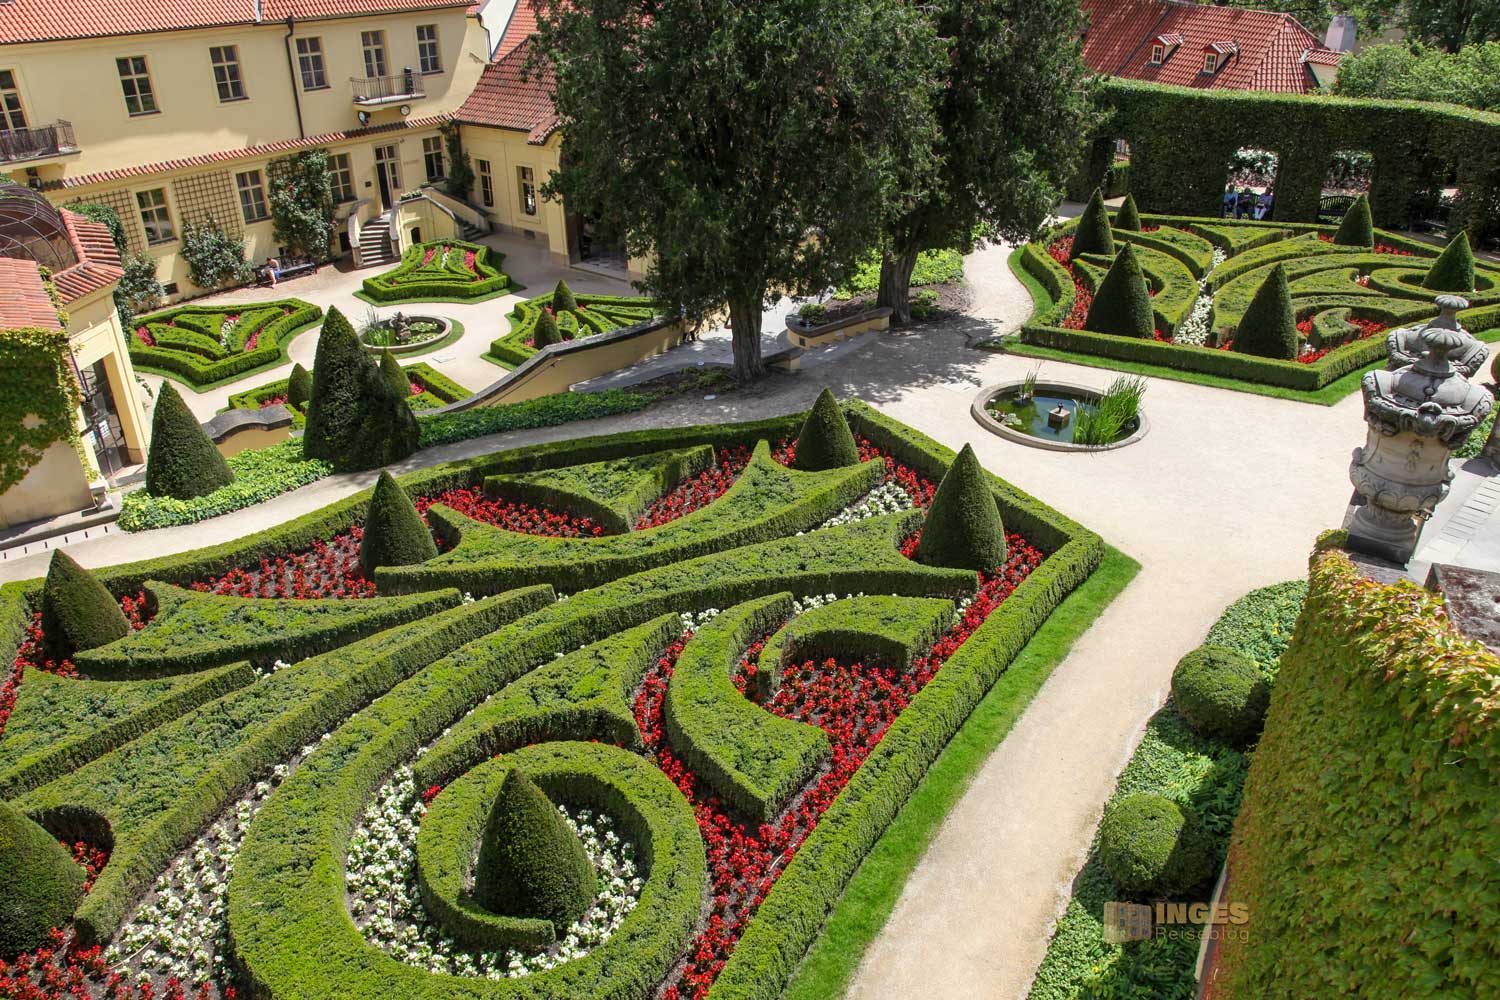 Vrtba Garten auf der Prager Kleinseite-2188